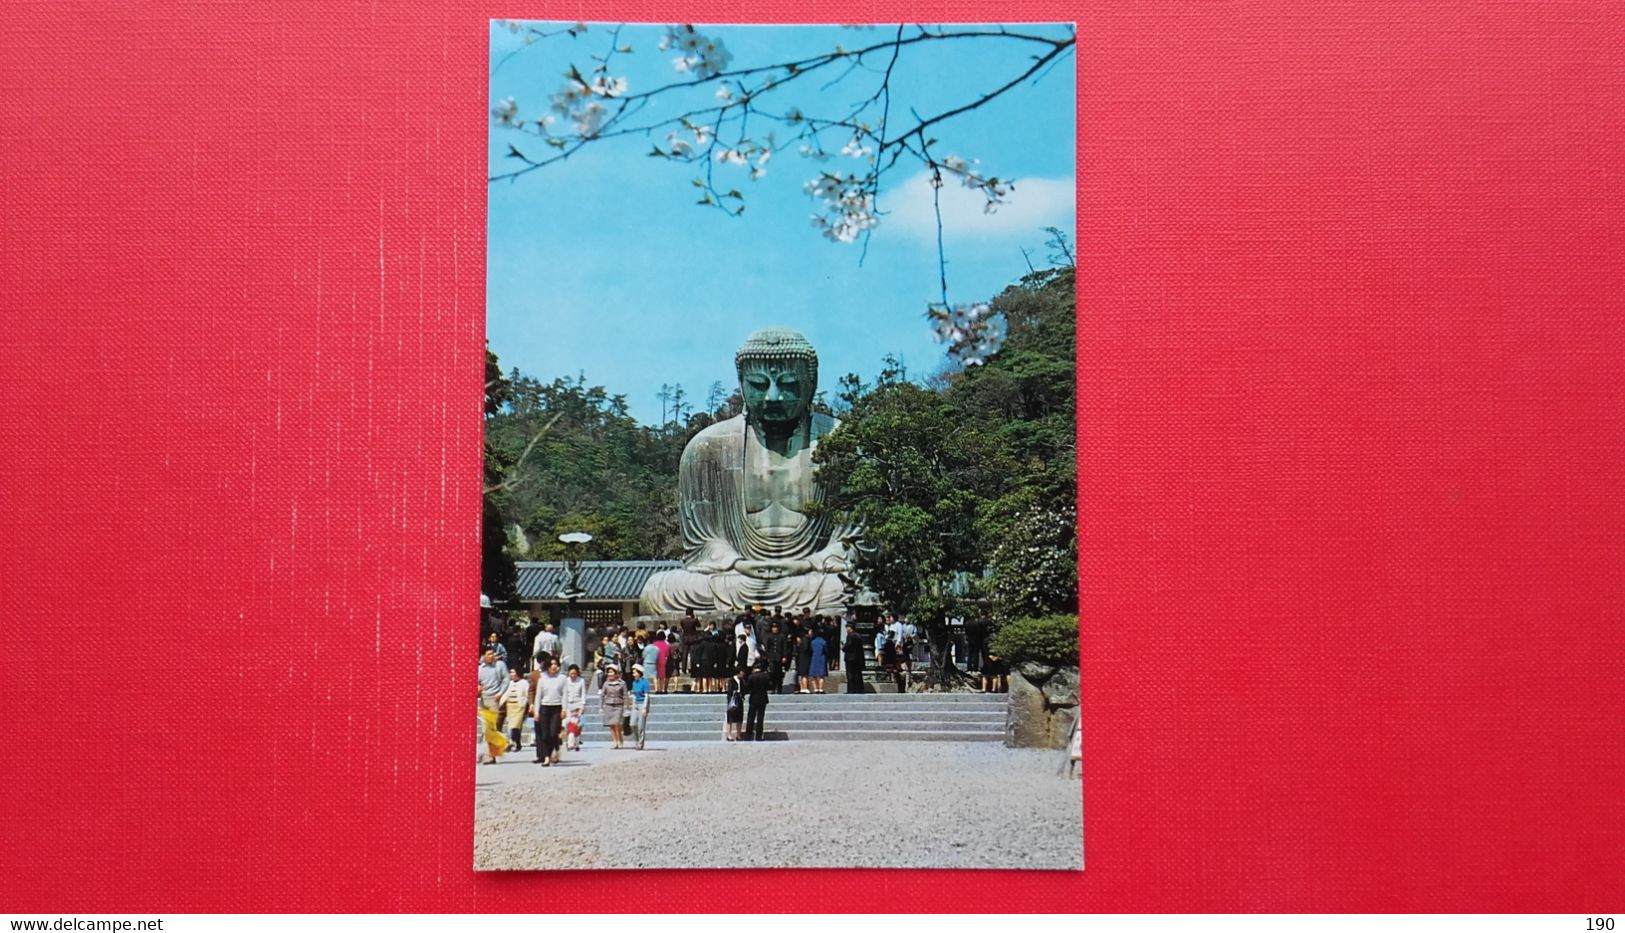 The Budda Of Kamakura - Budismo